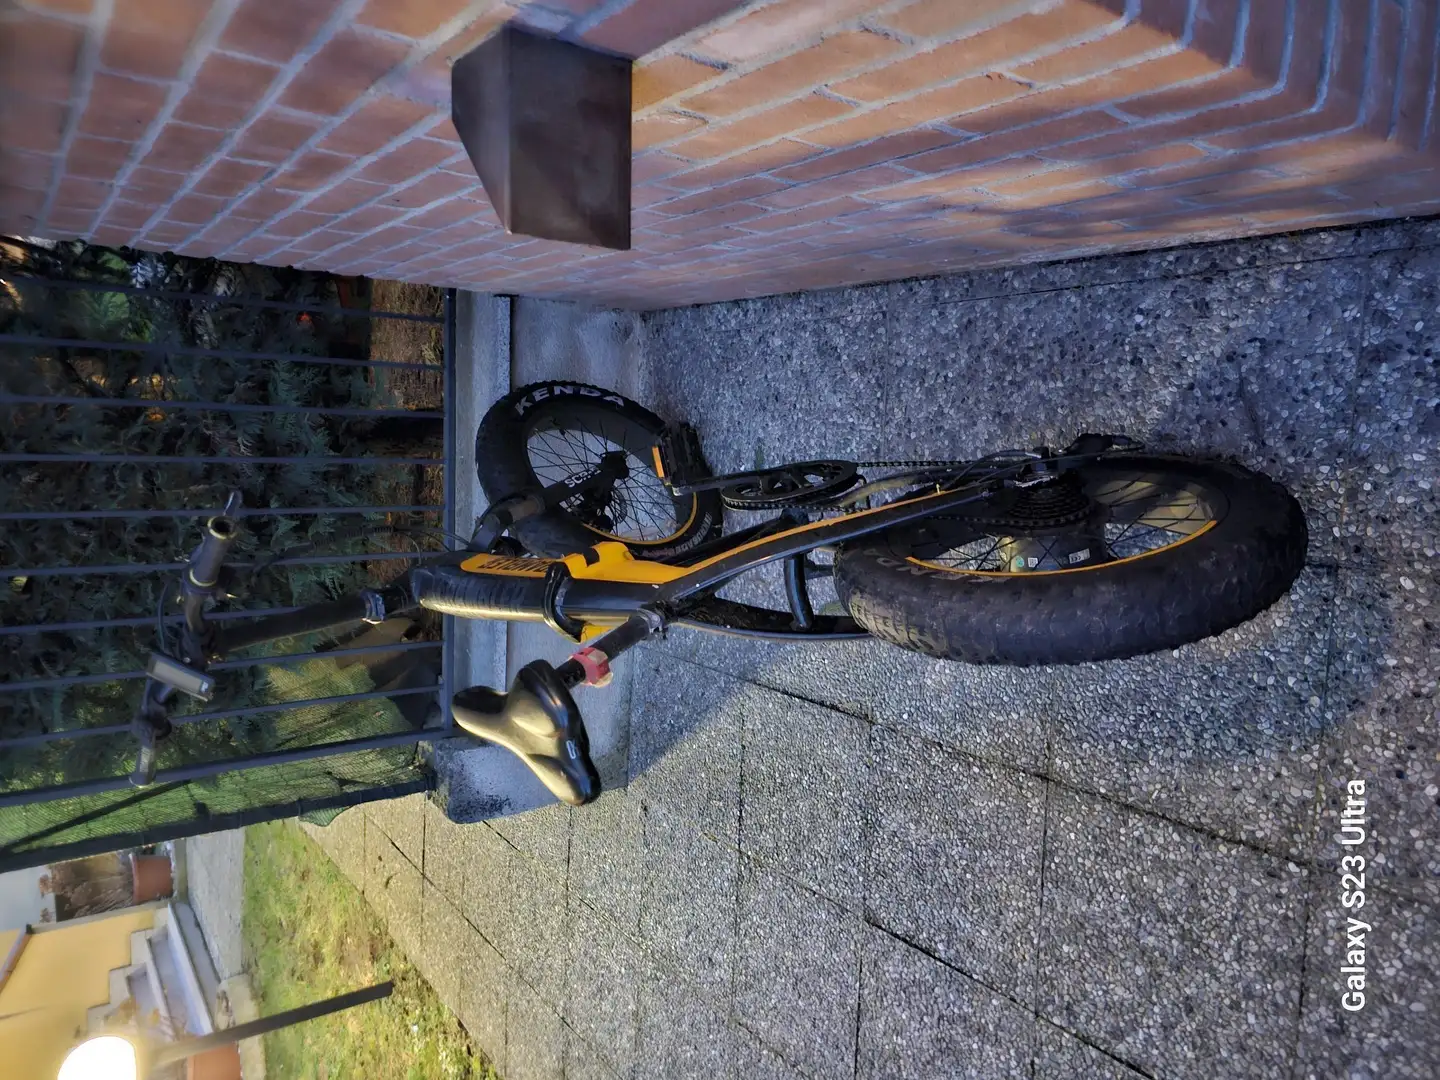 Ducati Scrambler Negru - 2